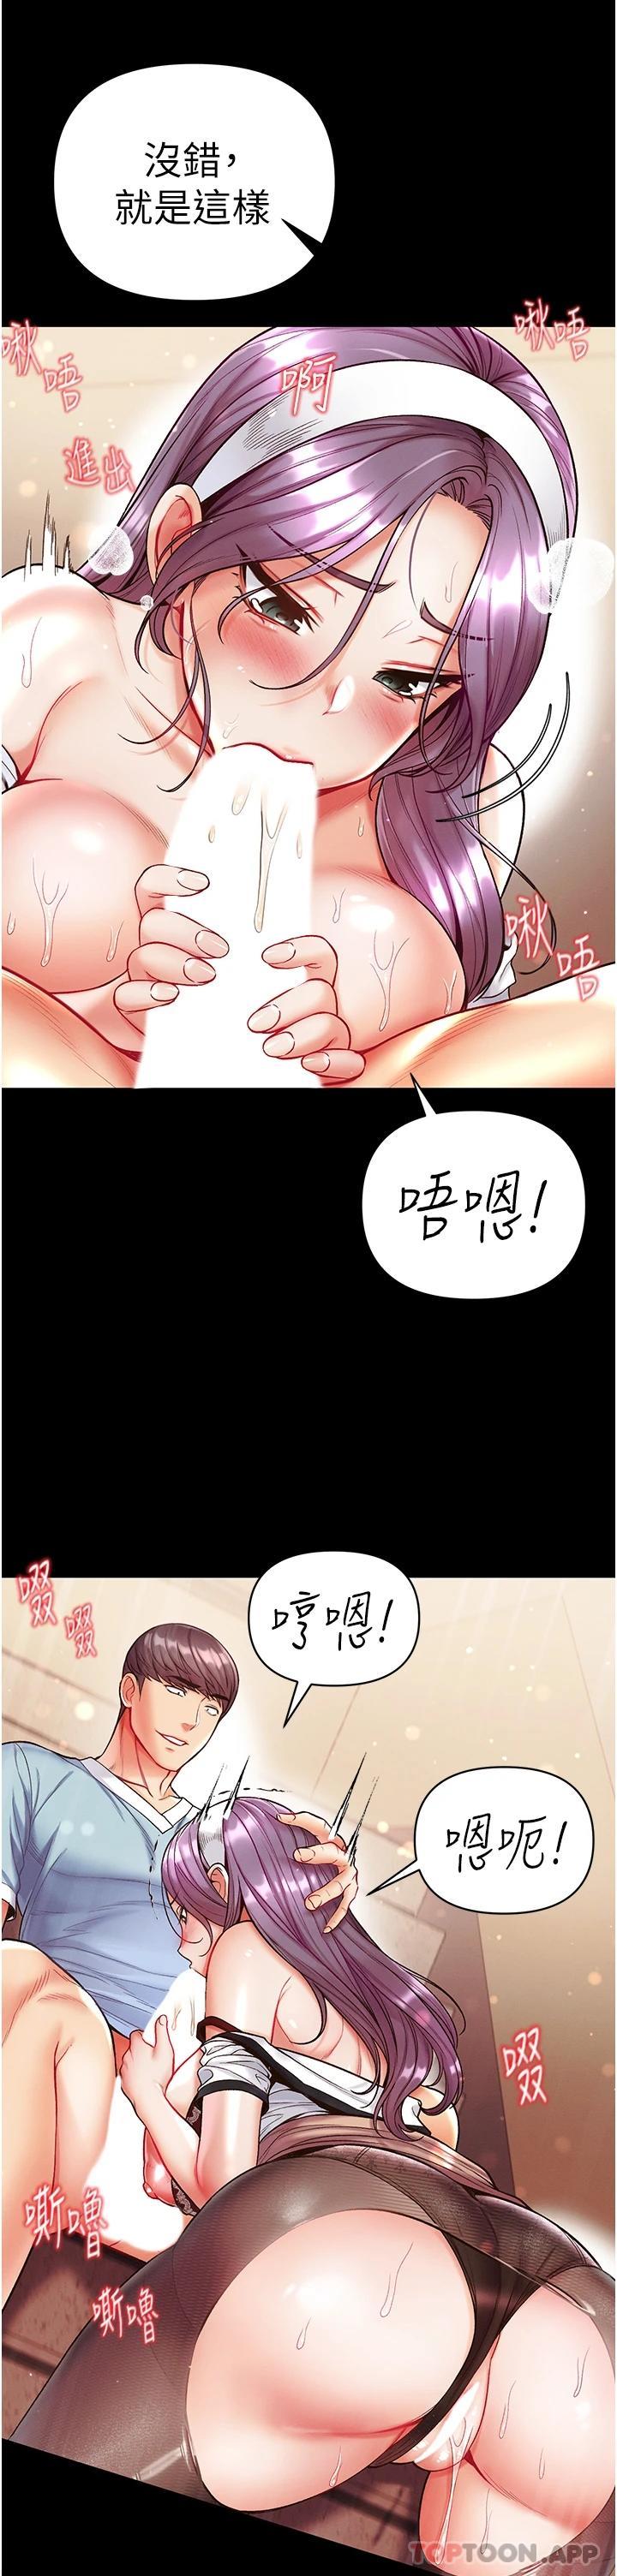 韩国漫画第一大弟子韩漫_第一大弟子-第14话-充满雄性味道的肉棒在线免费阅读-韩国漫画-第37张图片